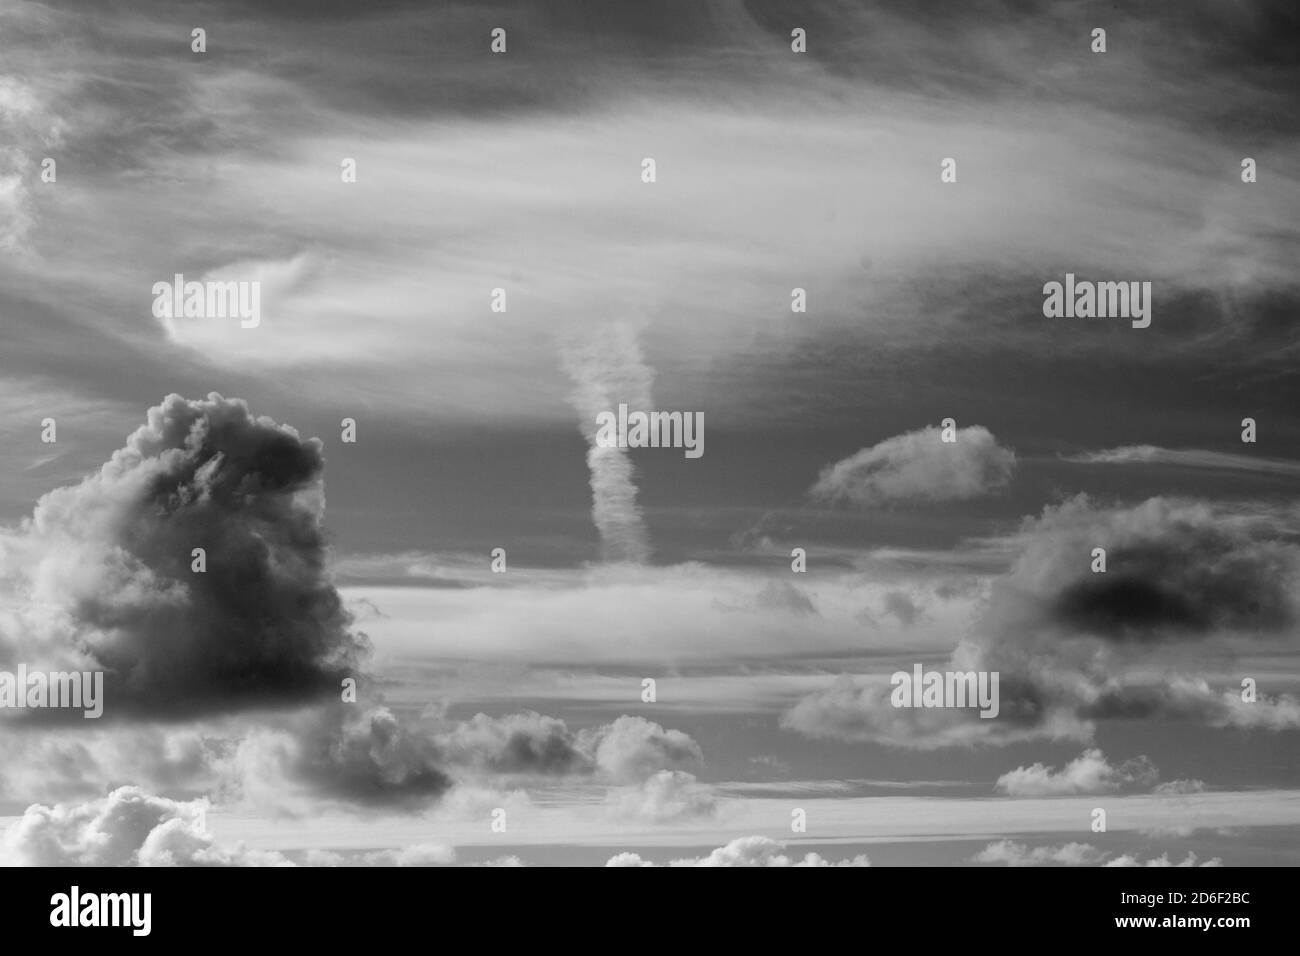 Natürliche Wolkenbildung, die einer nuklearen Explosion ähnelt. Stockfoto